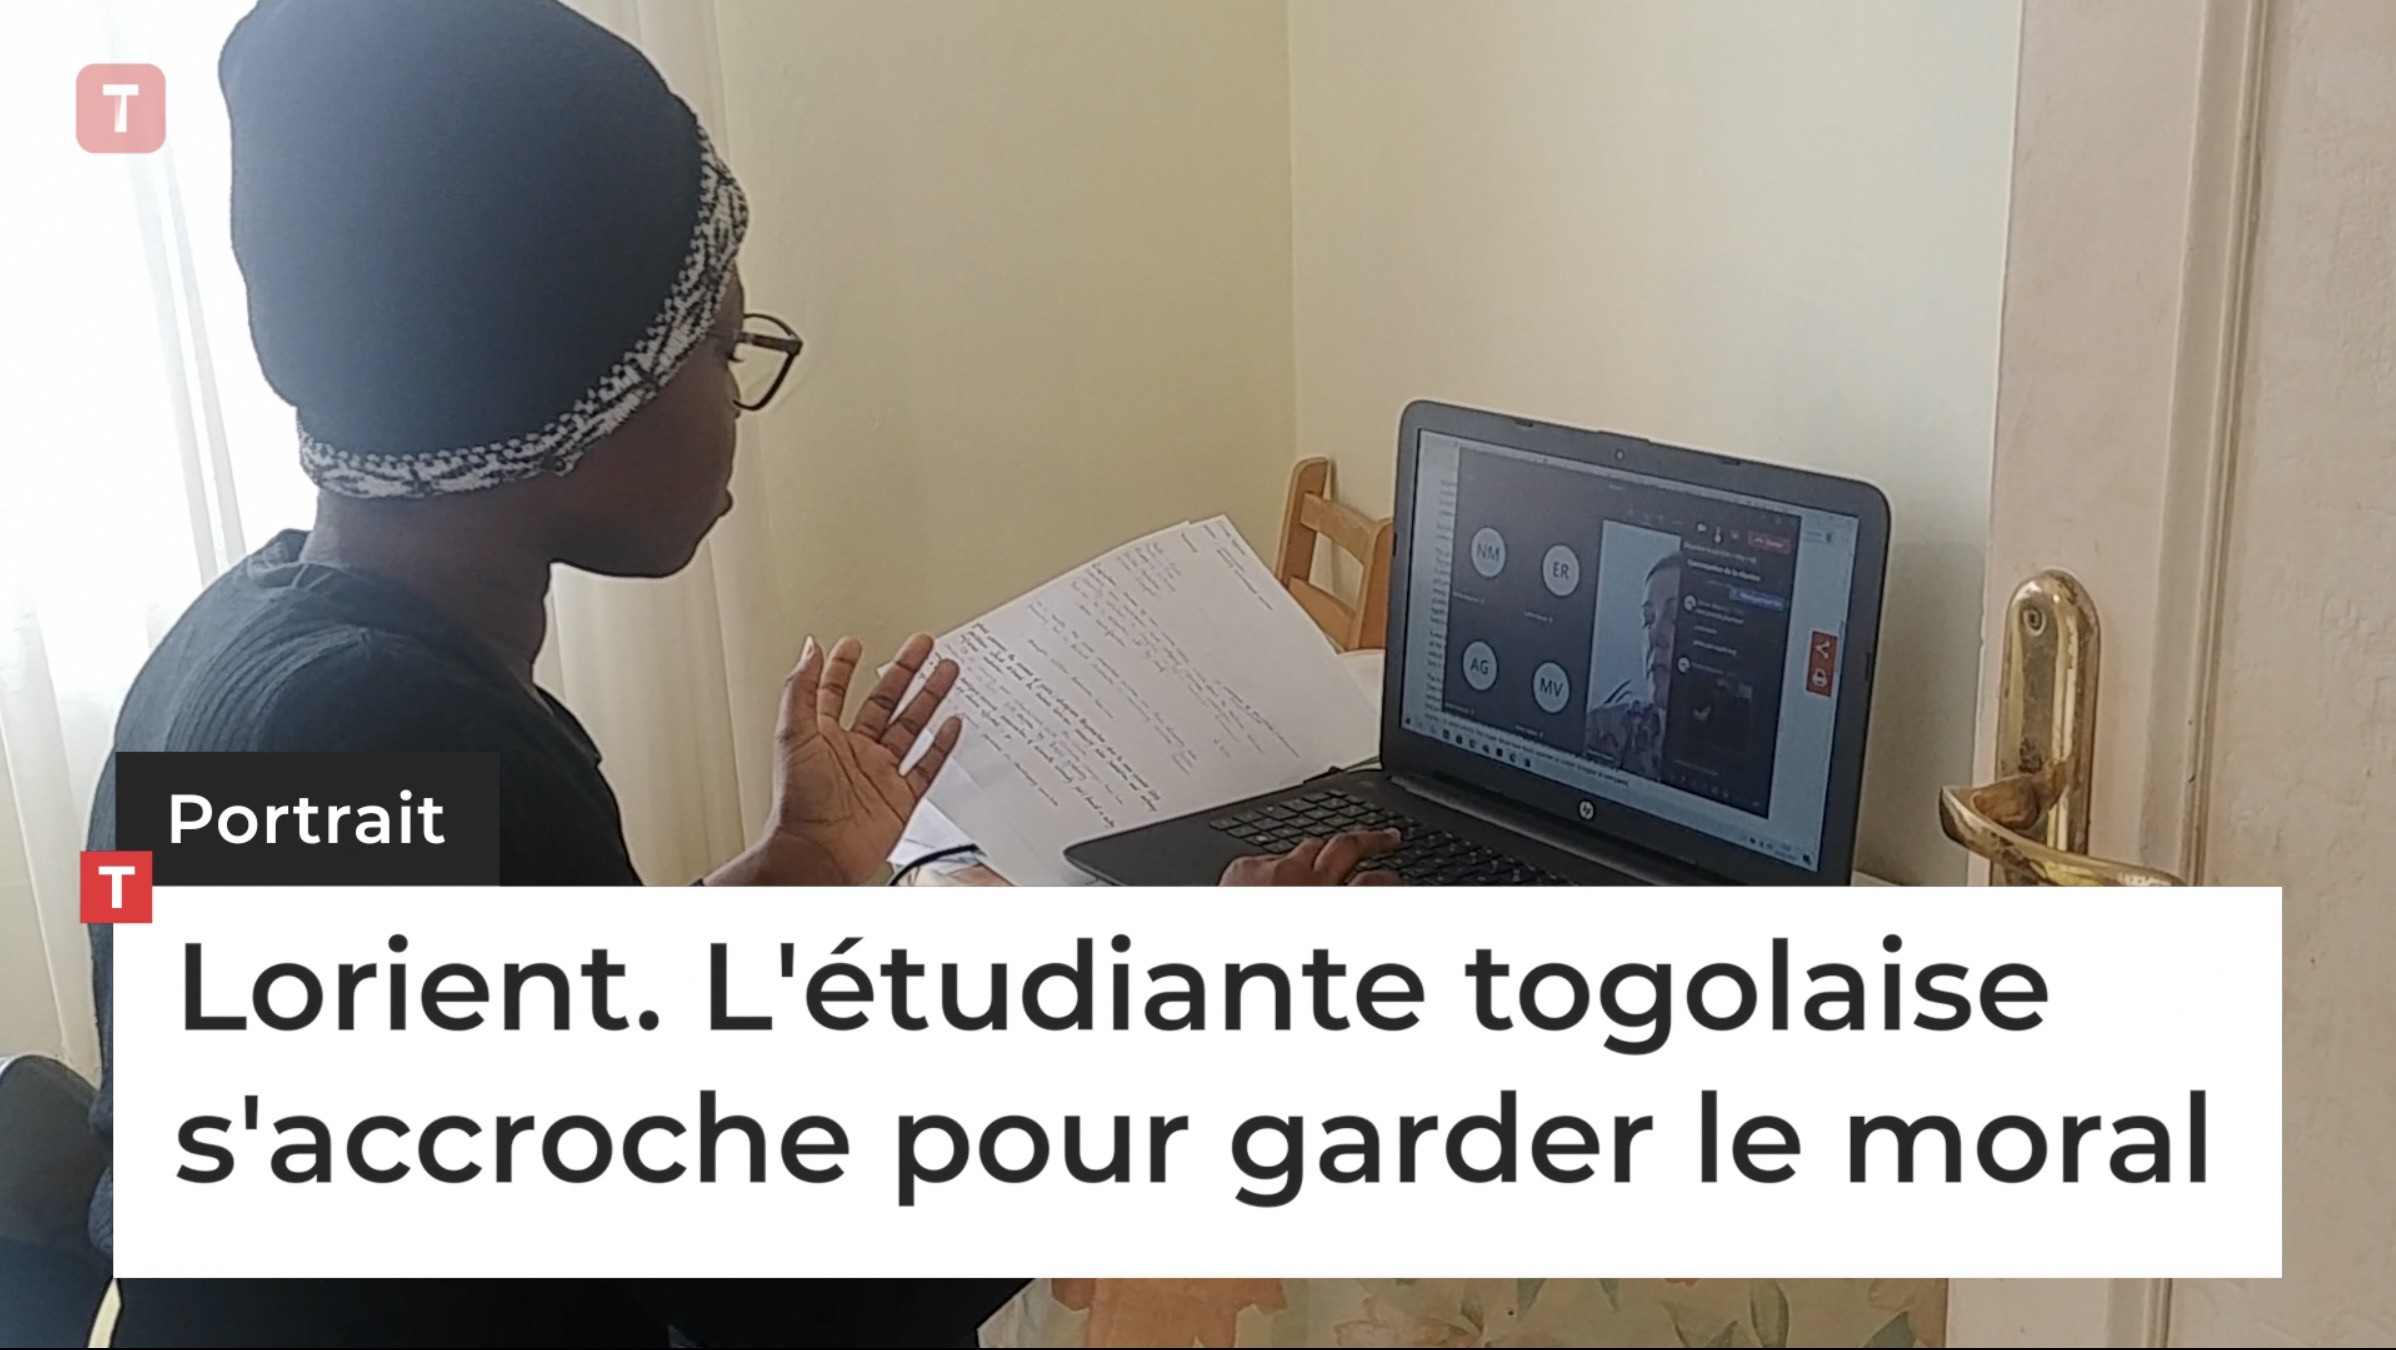 Lorient. L'étudiante togolaise s'accroche pour garder le moral (Le Télégramme)